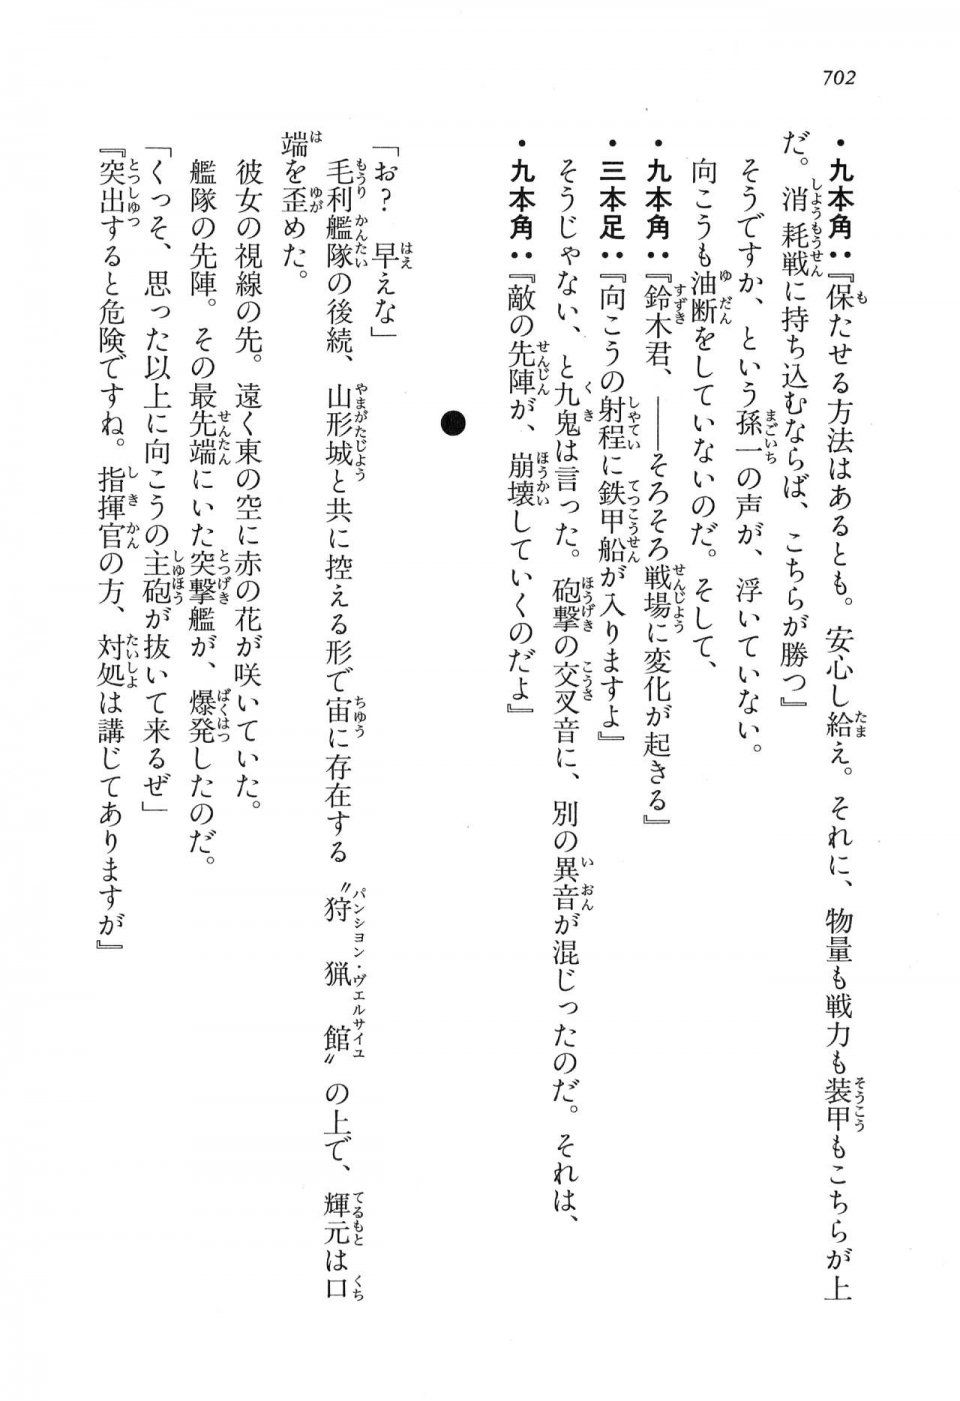 Kyoukai Senjou no Horizon LN Vol 16(7A) - Photo #702